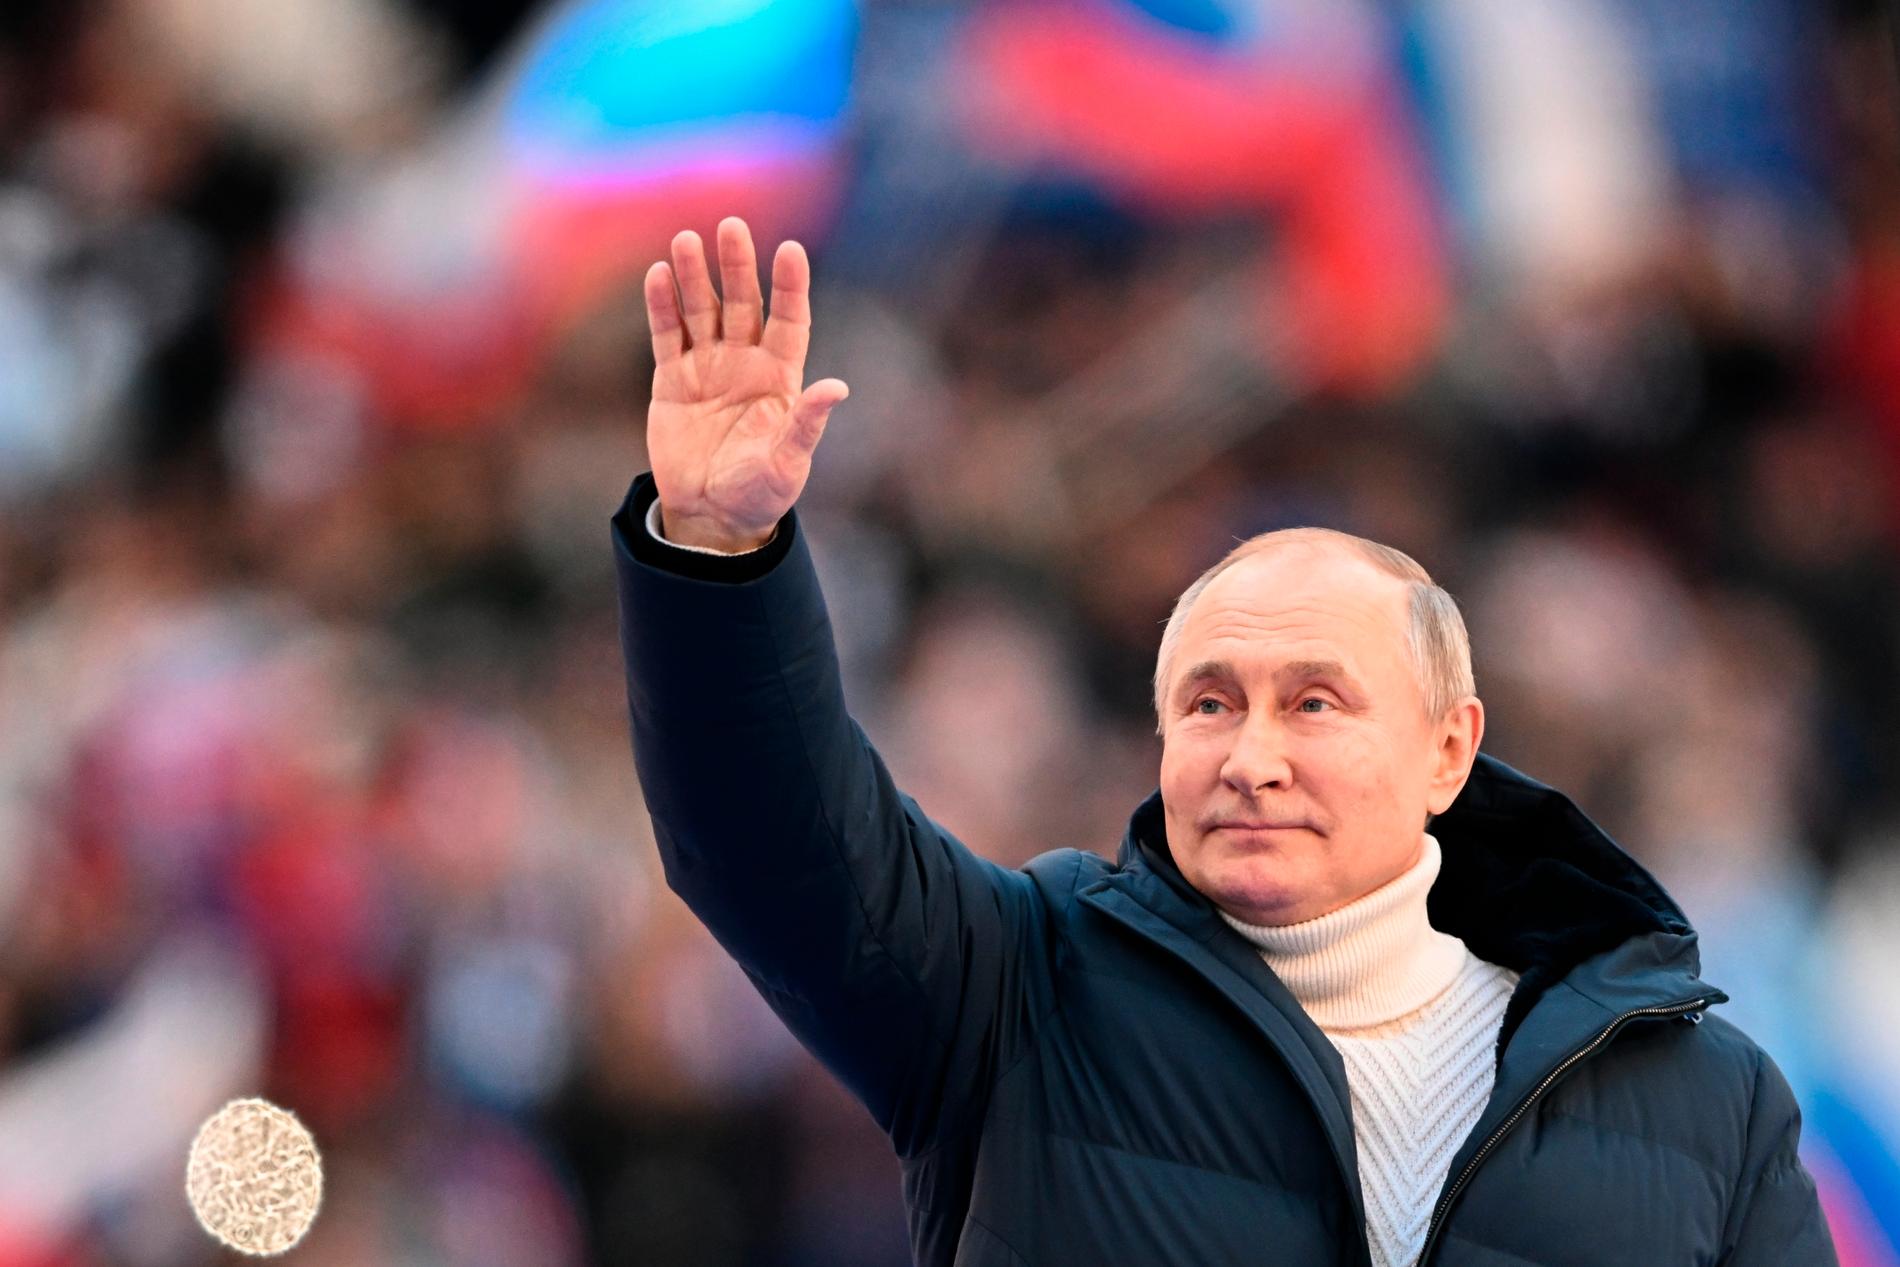 Rysslands president Vladimir Putin under en konsert 18 mars som firade årsdagen av annekteringen av Krimhalvön, som skett i strid med internationell rätt.